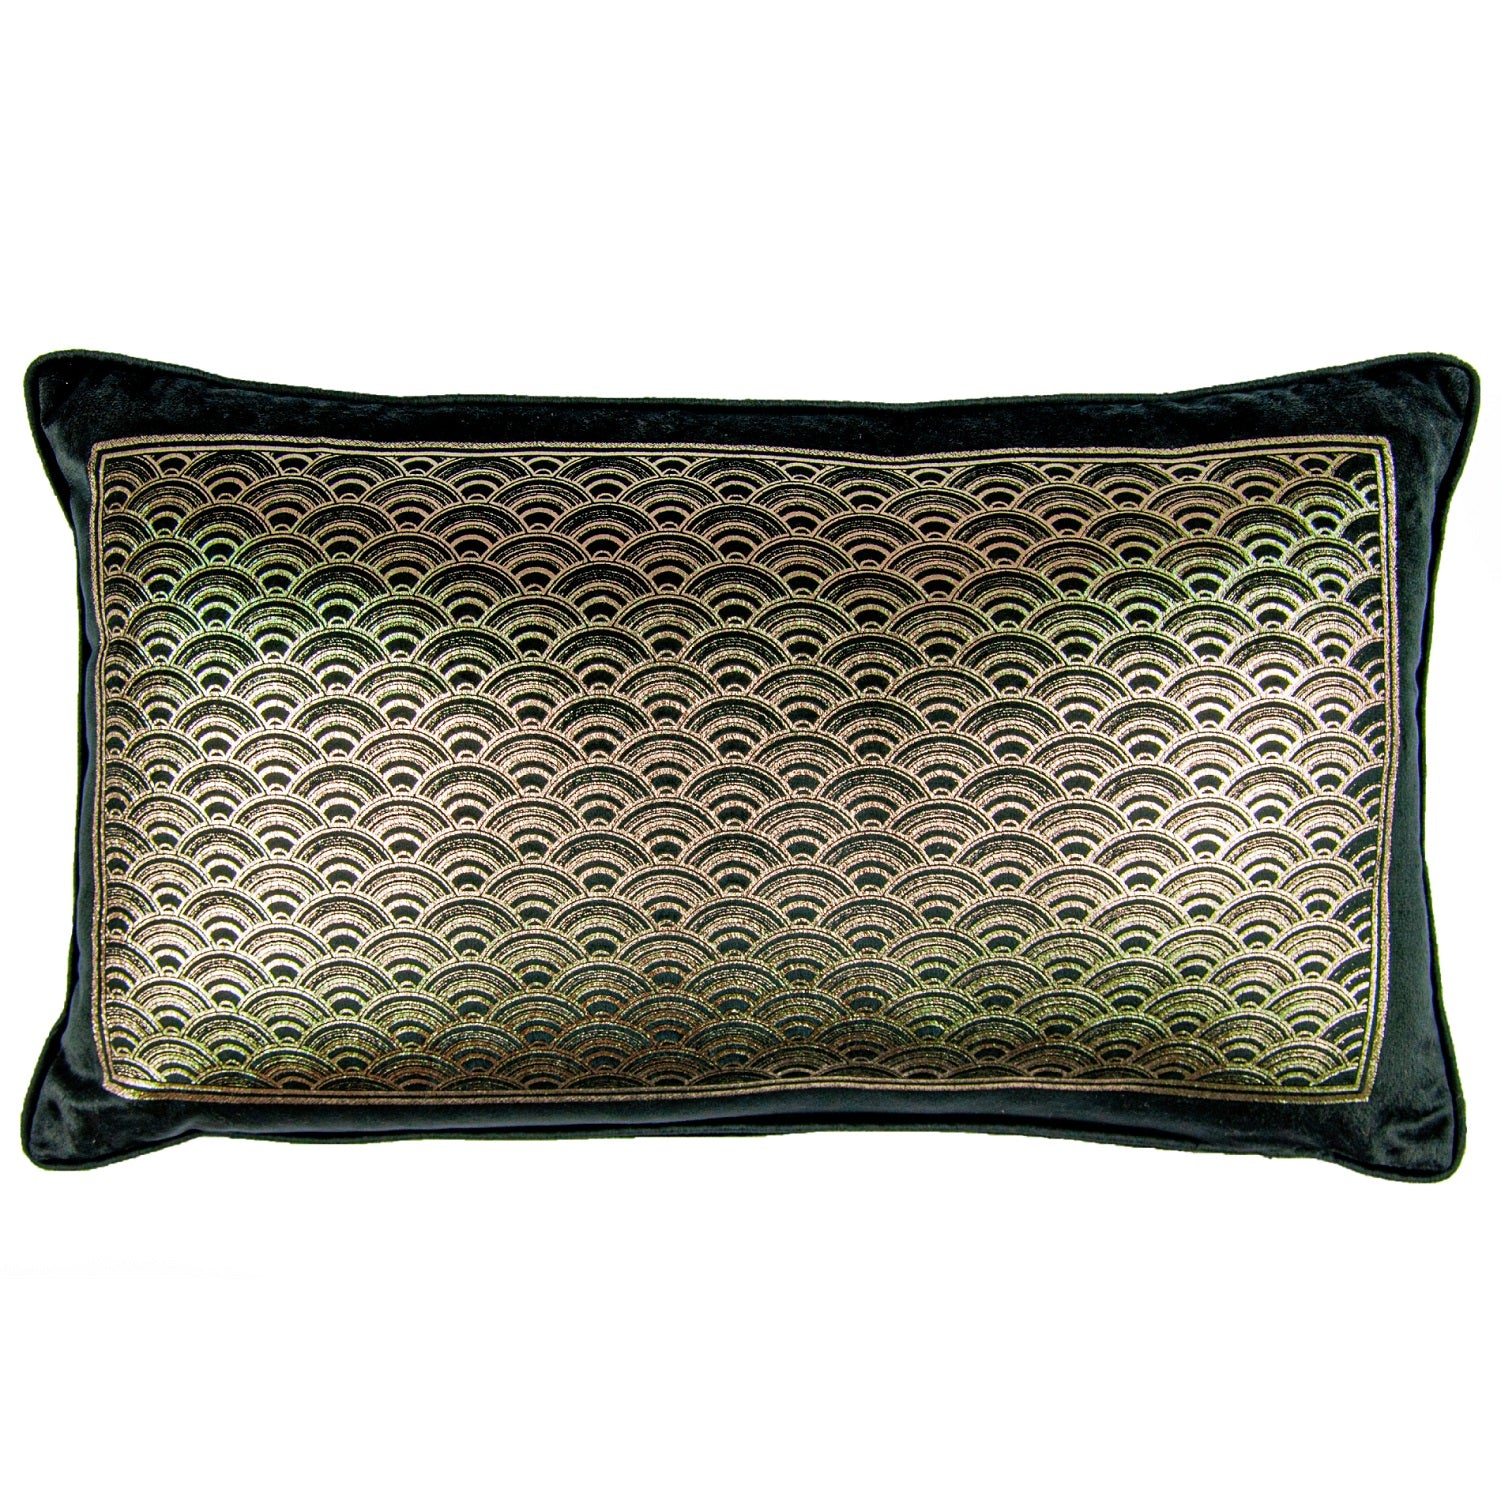 Luxury Velvet Filled Boudoir Cushion - Akira Black & Gold